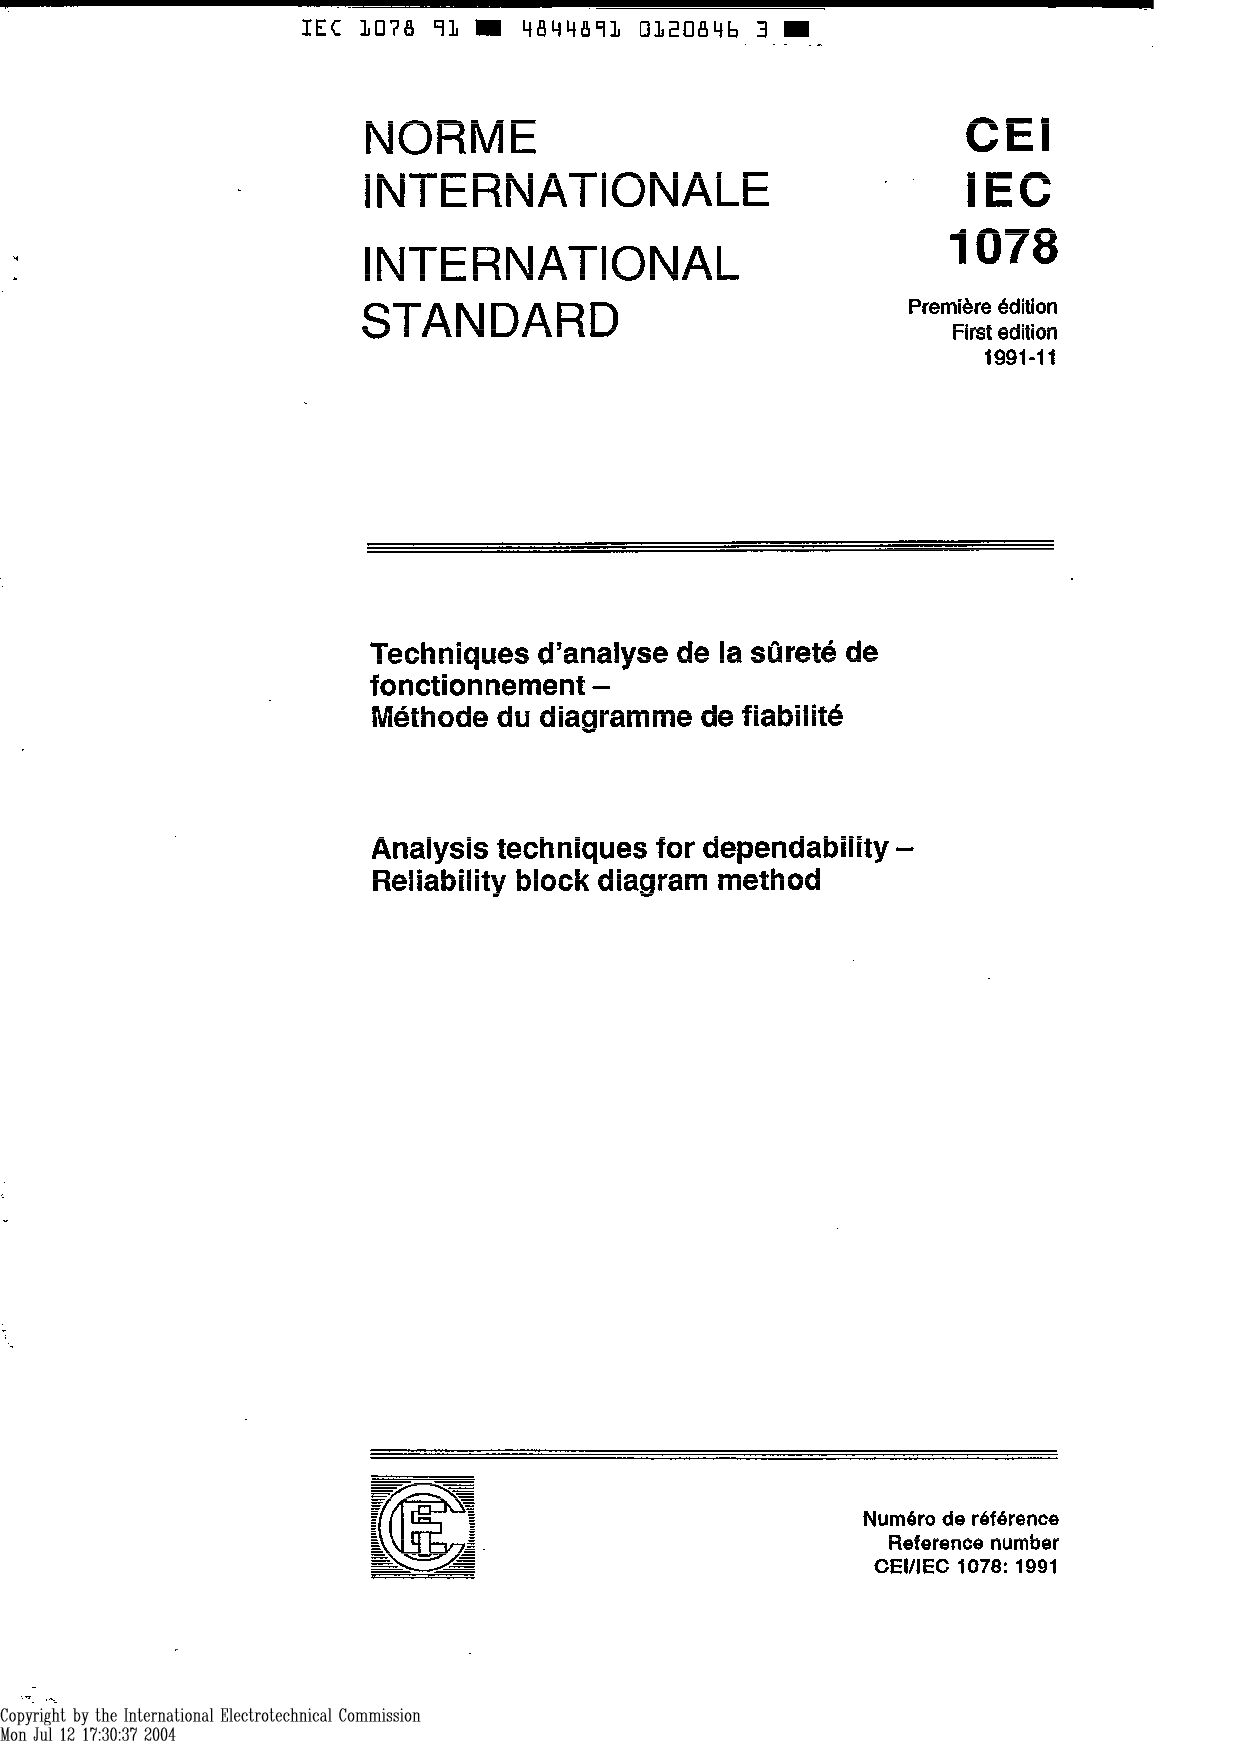 IEC 61078:1991